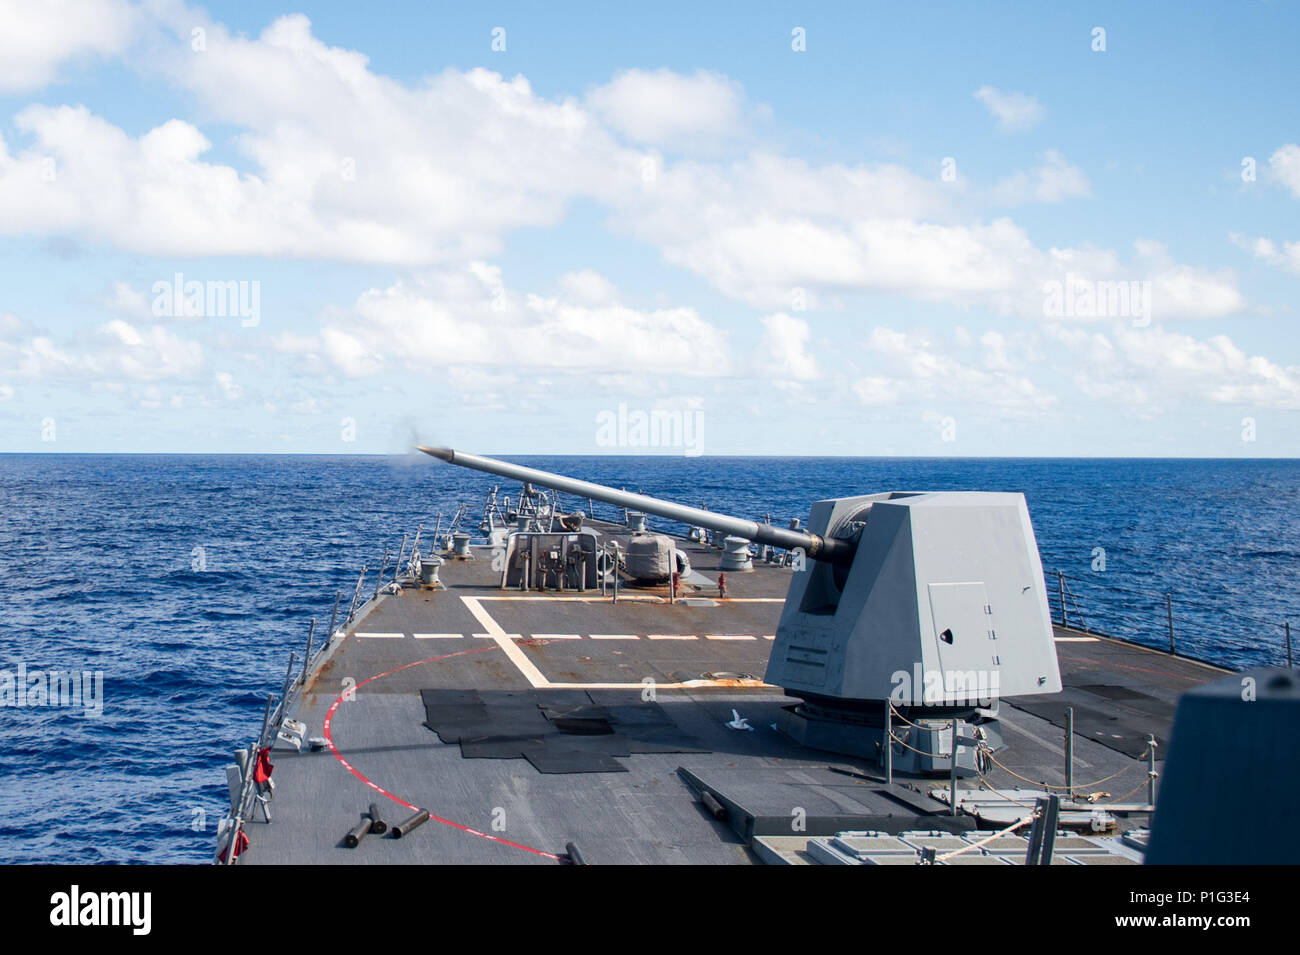 161026-N-NT265-244 Mare delle Filippine (ott. 26, 2016) La distribuita Arleigh Burke-class guidato-missile destroyer USS McCampbell (DDG 85), incendi il suo MK45 da 5 pollici pistola durante un live-fire esercitazione. McCampbell è di pattuglia con un Carrier Strike gruppo cinque (CSG 5) di supporto di sicurezza e stabilità nella Indo-Asia-regione del Pacifico. (U.S. Navy foto di Sottufficiali di seconda classe Senyk cristiana/rilasciato) Foto Stock